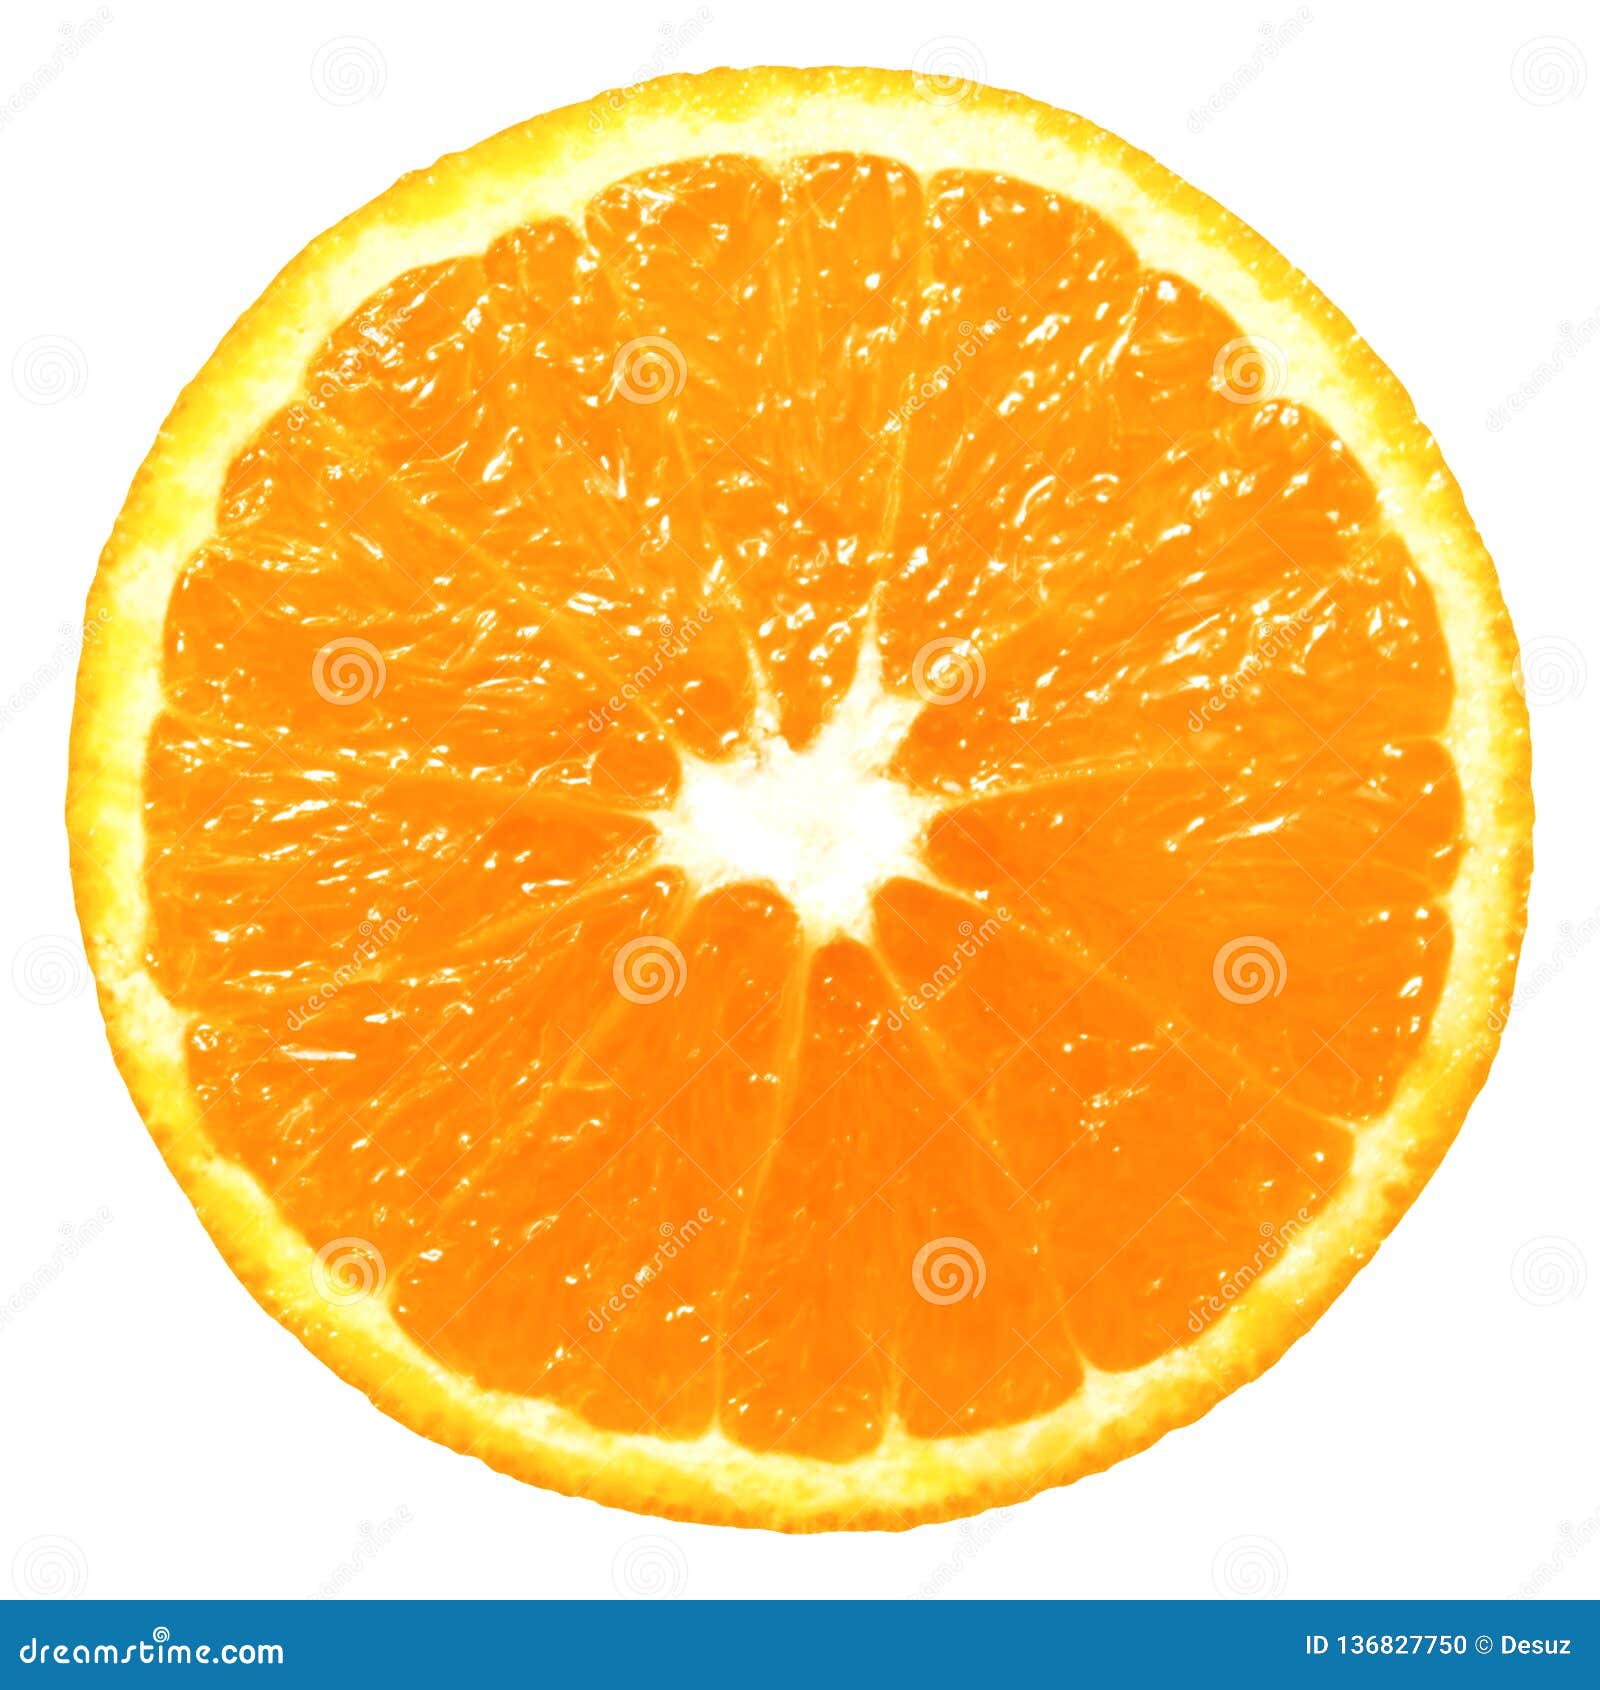 Bạn có muốn chiêm ngưỡng hình ảnh về miếng cam tươi ngon màu sắc rực rỡ? Miếng cam được thái mỏng và đưa lên như một bức tranh đầy nghệ thuật. Đuổi tan đi nắm mây một cách nhanh chóng và cảm nhận hương vị ngọt ngào của trái cam này.